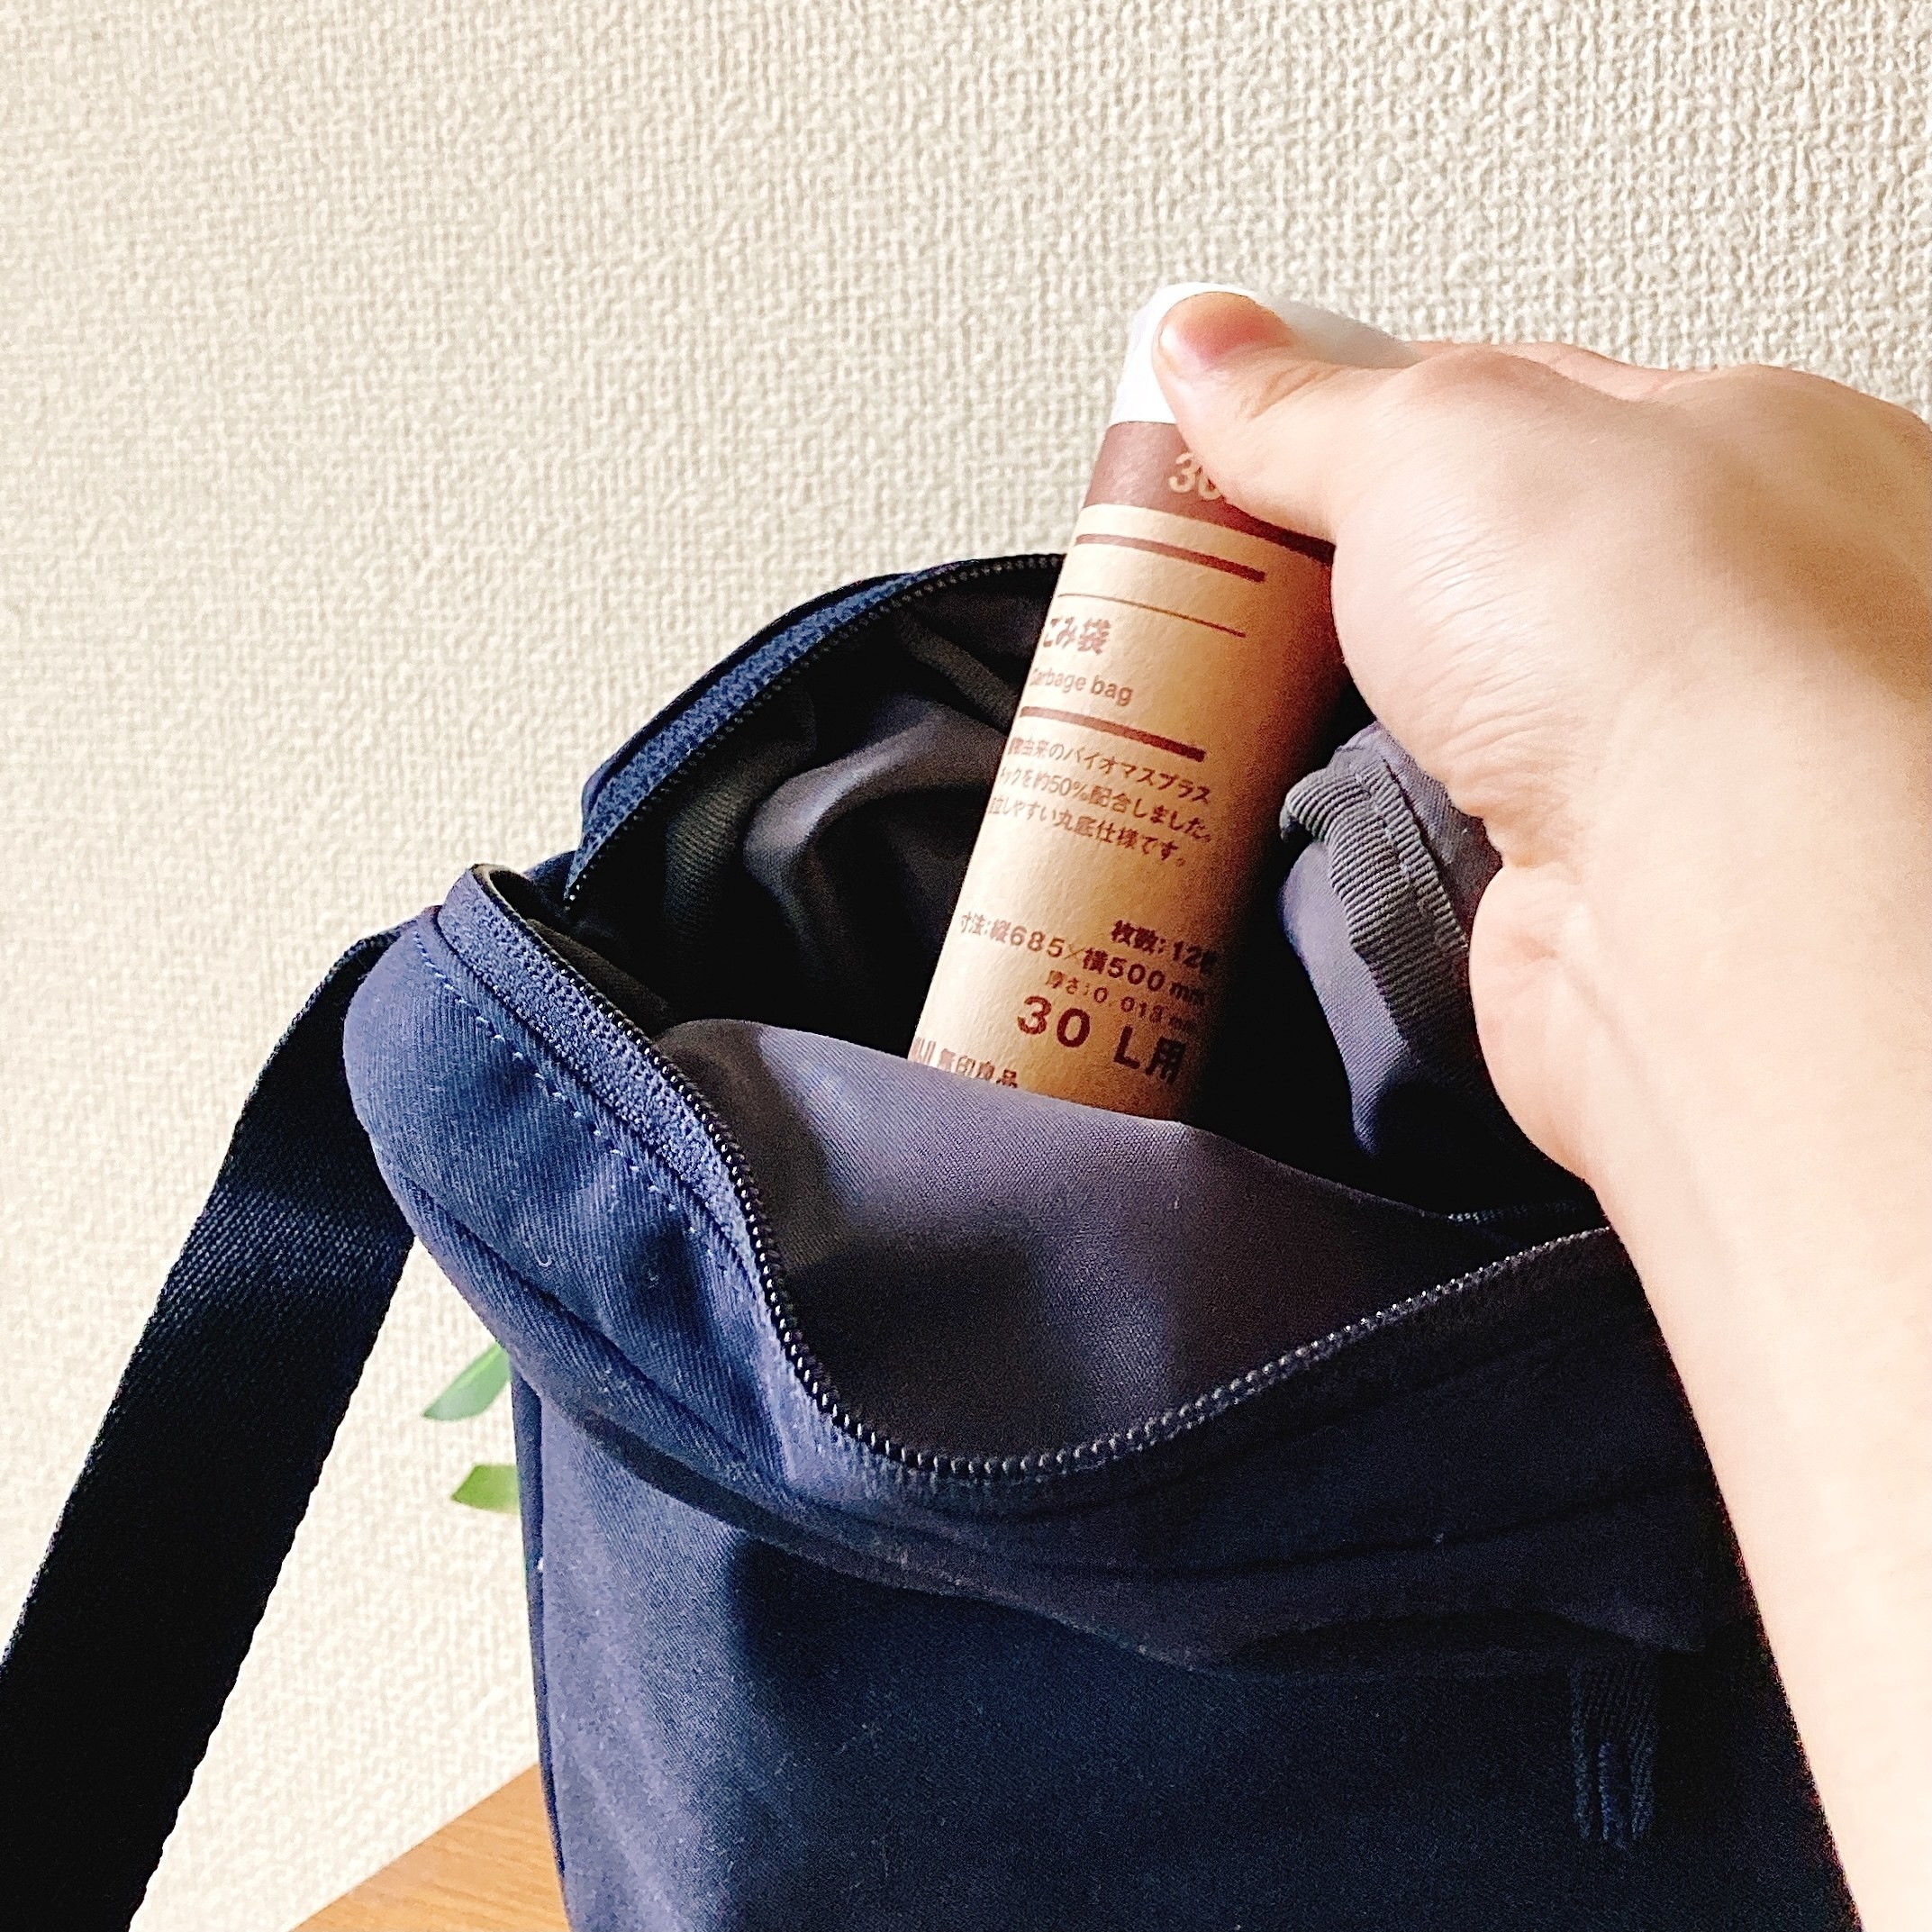 無印良品の「ごみ袋 30L用」は、コンパクトなロール状のごみ袋で、おでかけに便利なオススメグッズです！